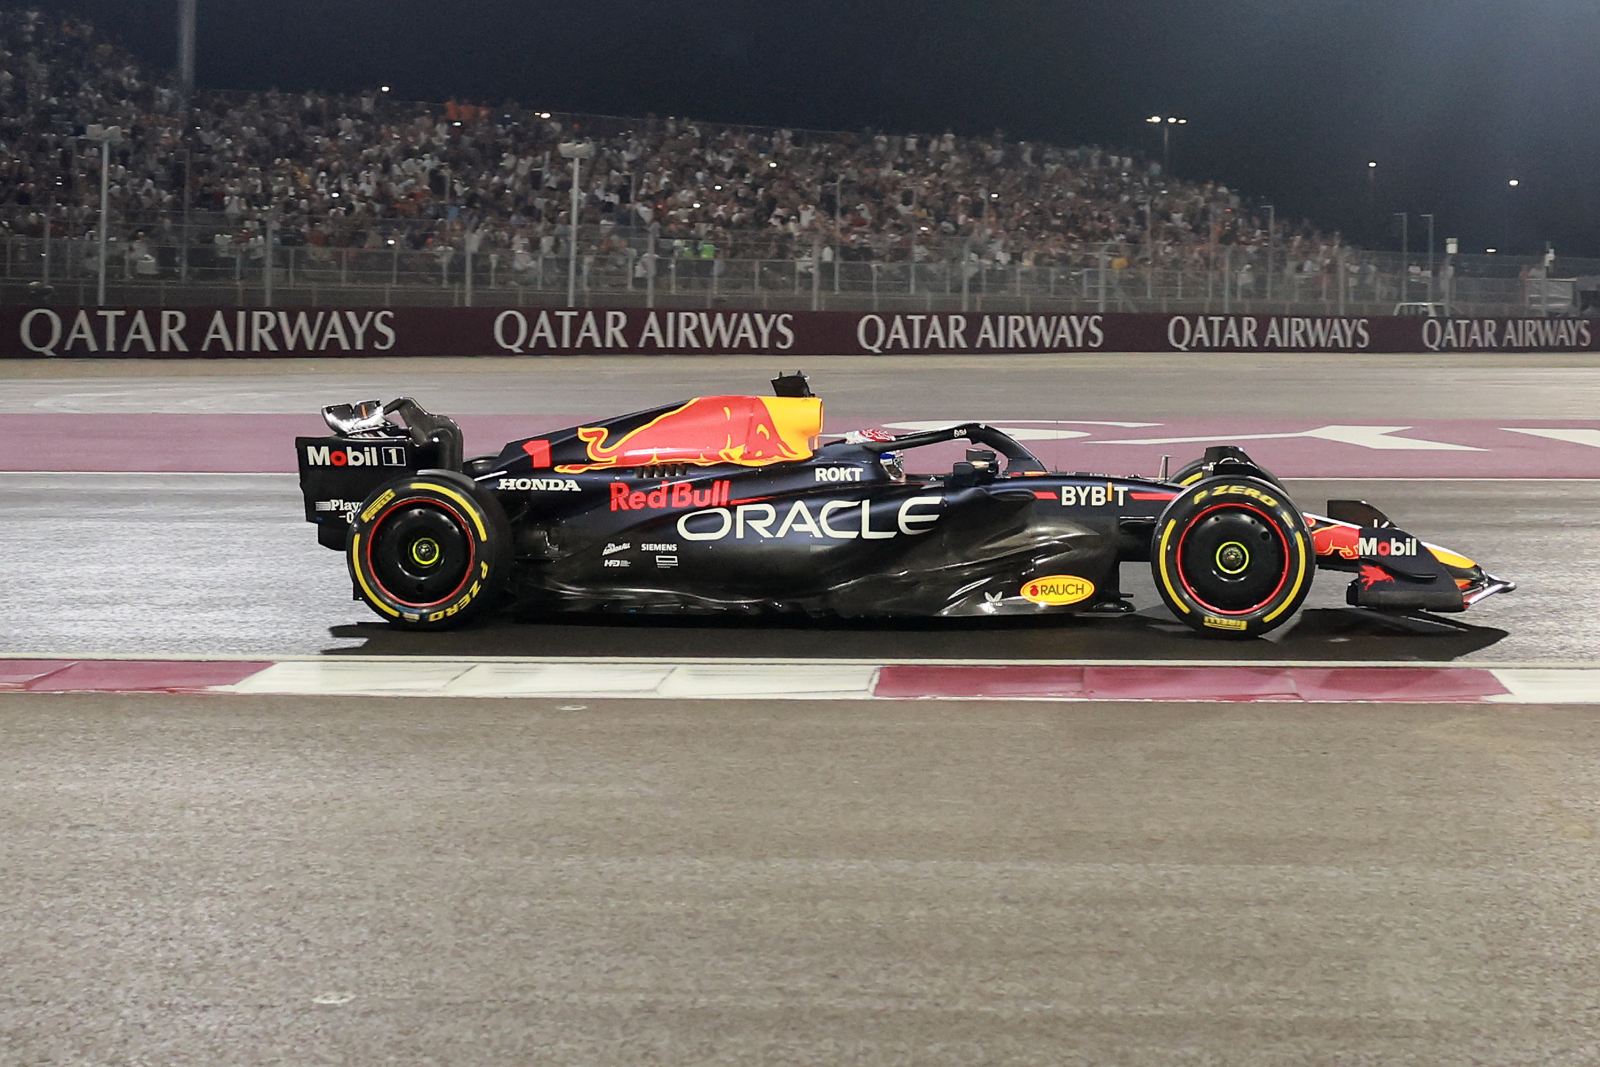 Arranca o Mundial de F1. Os horários para o Grande Prémio do Bahrain